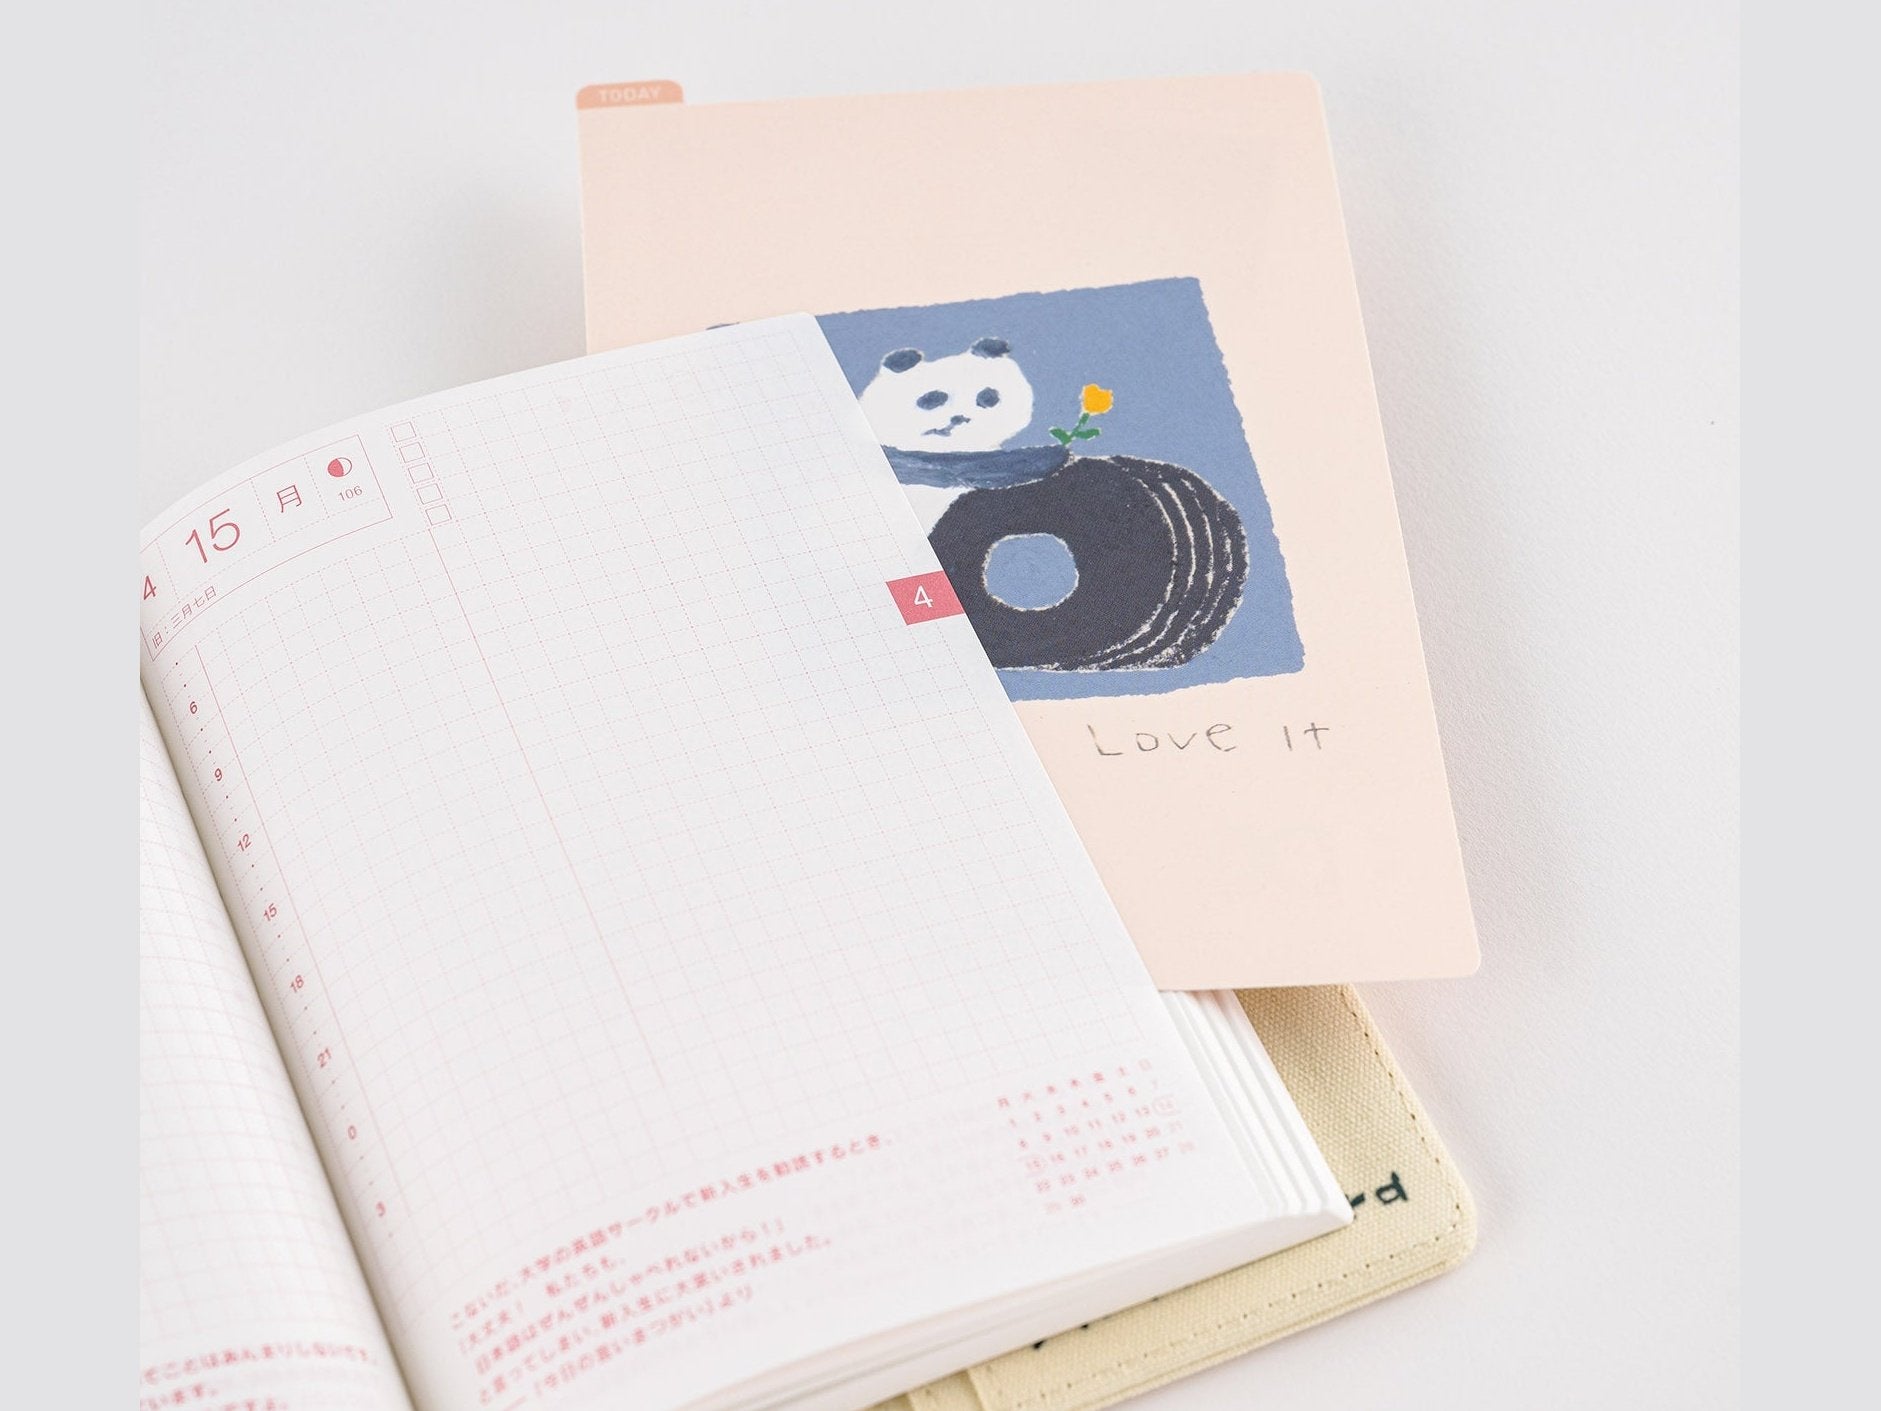 Hobonichi Techo Jin Kitamura: Hobonichi Pencil Board for A5 Size (Love it (Panda))